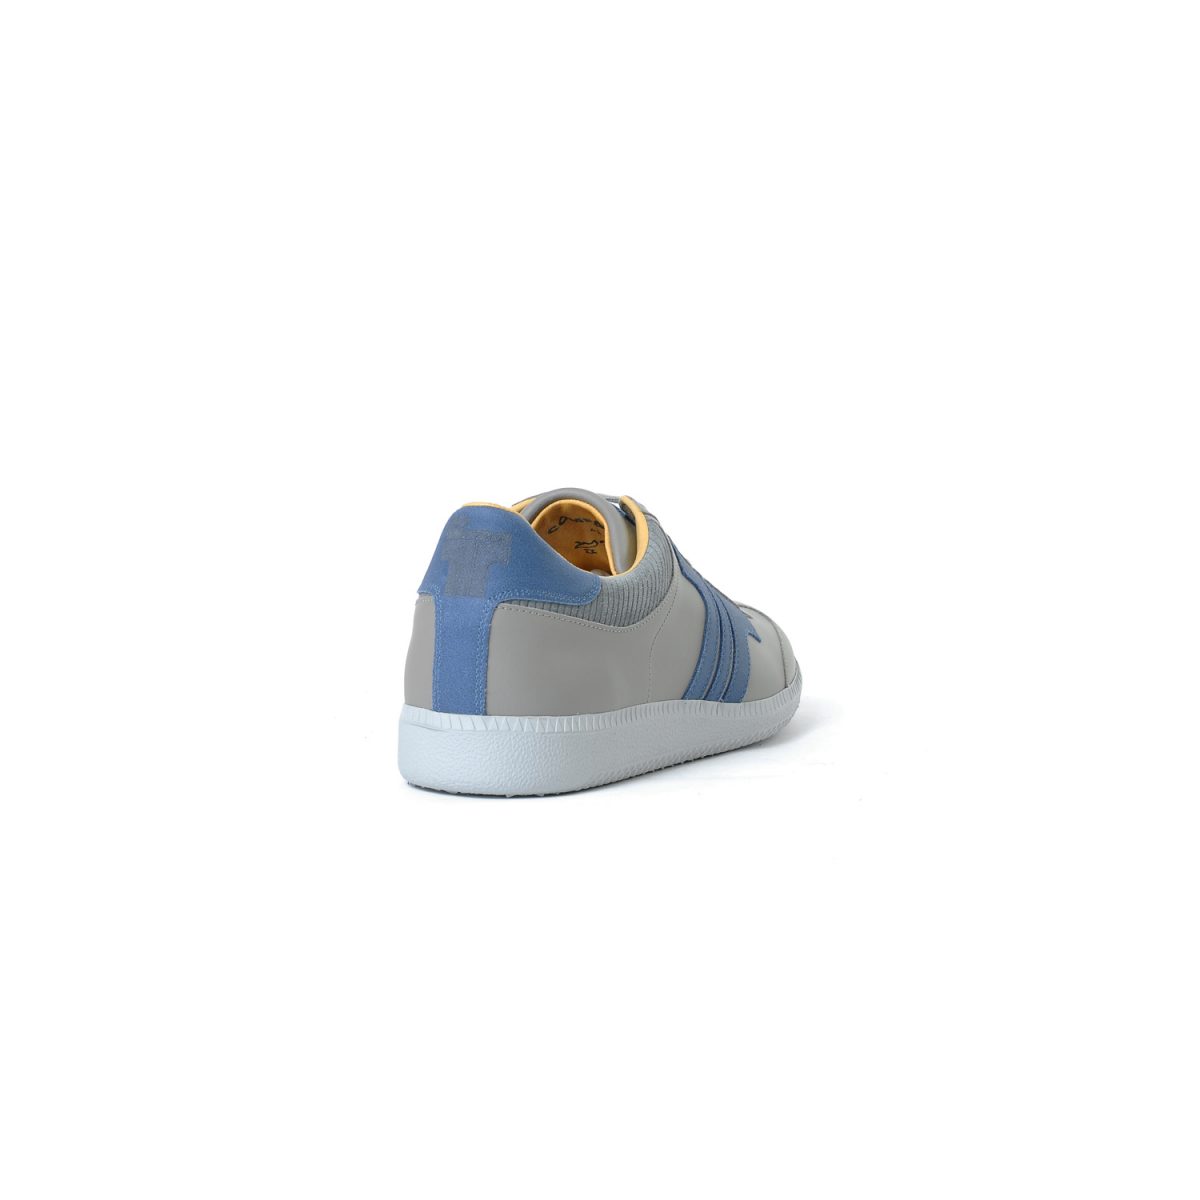 Tisza cipő - Compakt - Szürke-kék-kord